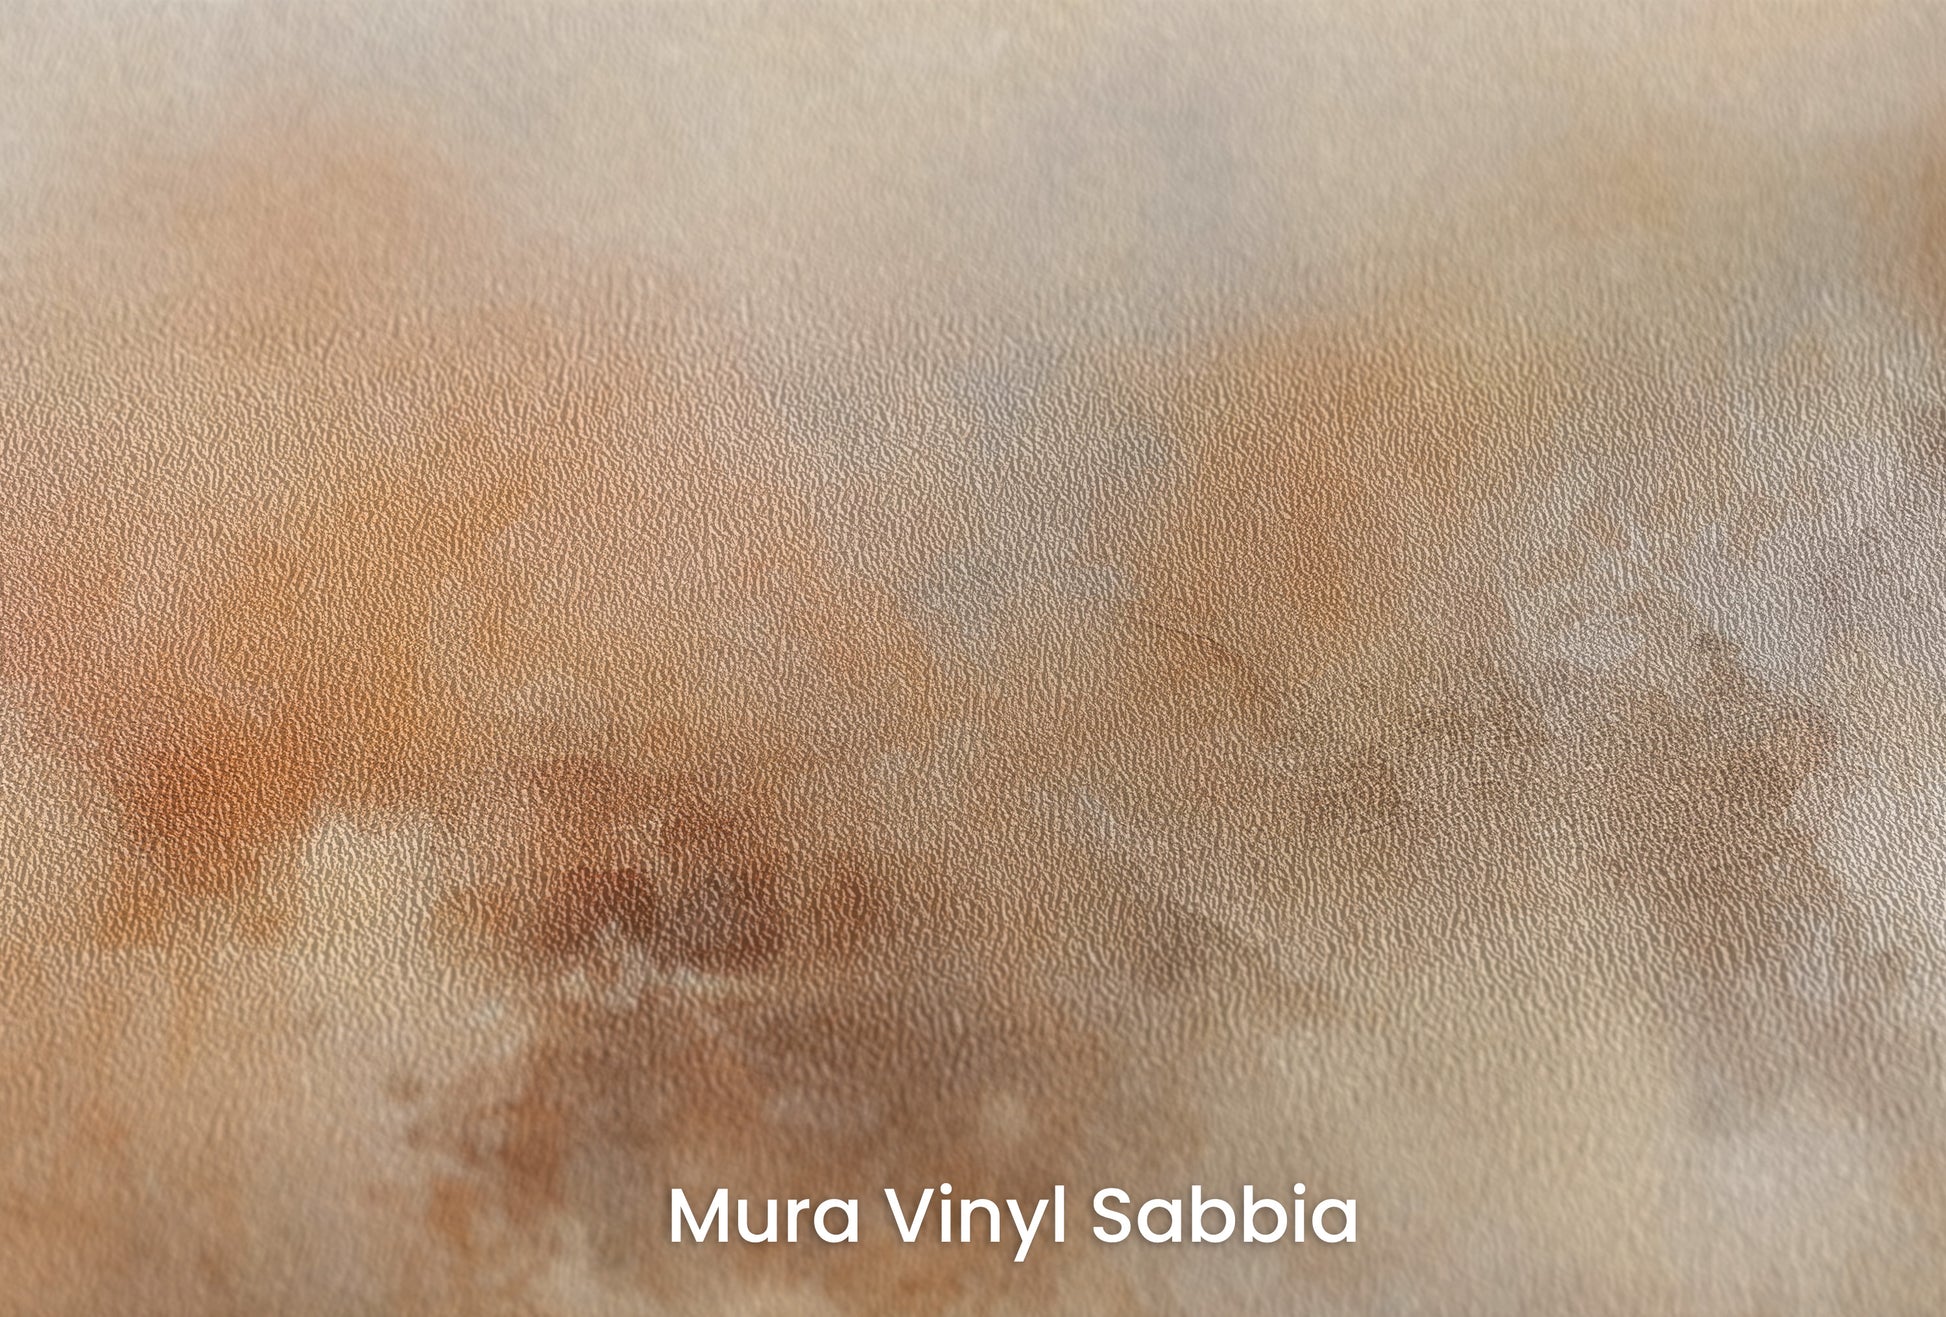 Zbliżenie na artystyczną fototapetę o nazwie AMBER DAWN ABSTRACT na podłożu Mura Vinyl Sabbia struktura grubego ziarna piasku.